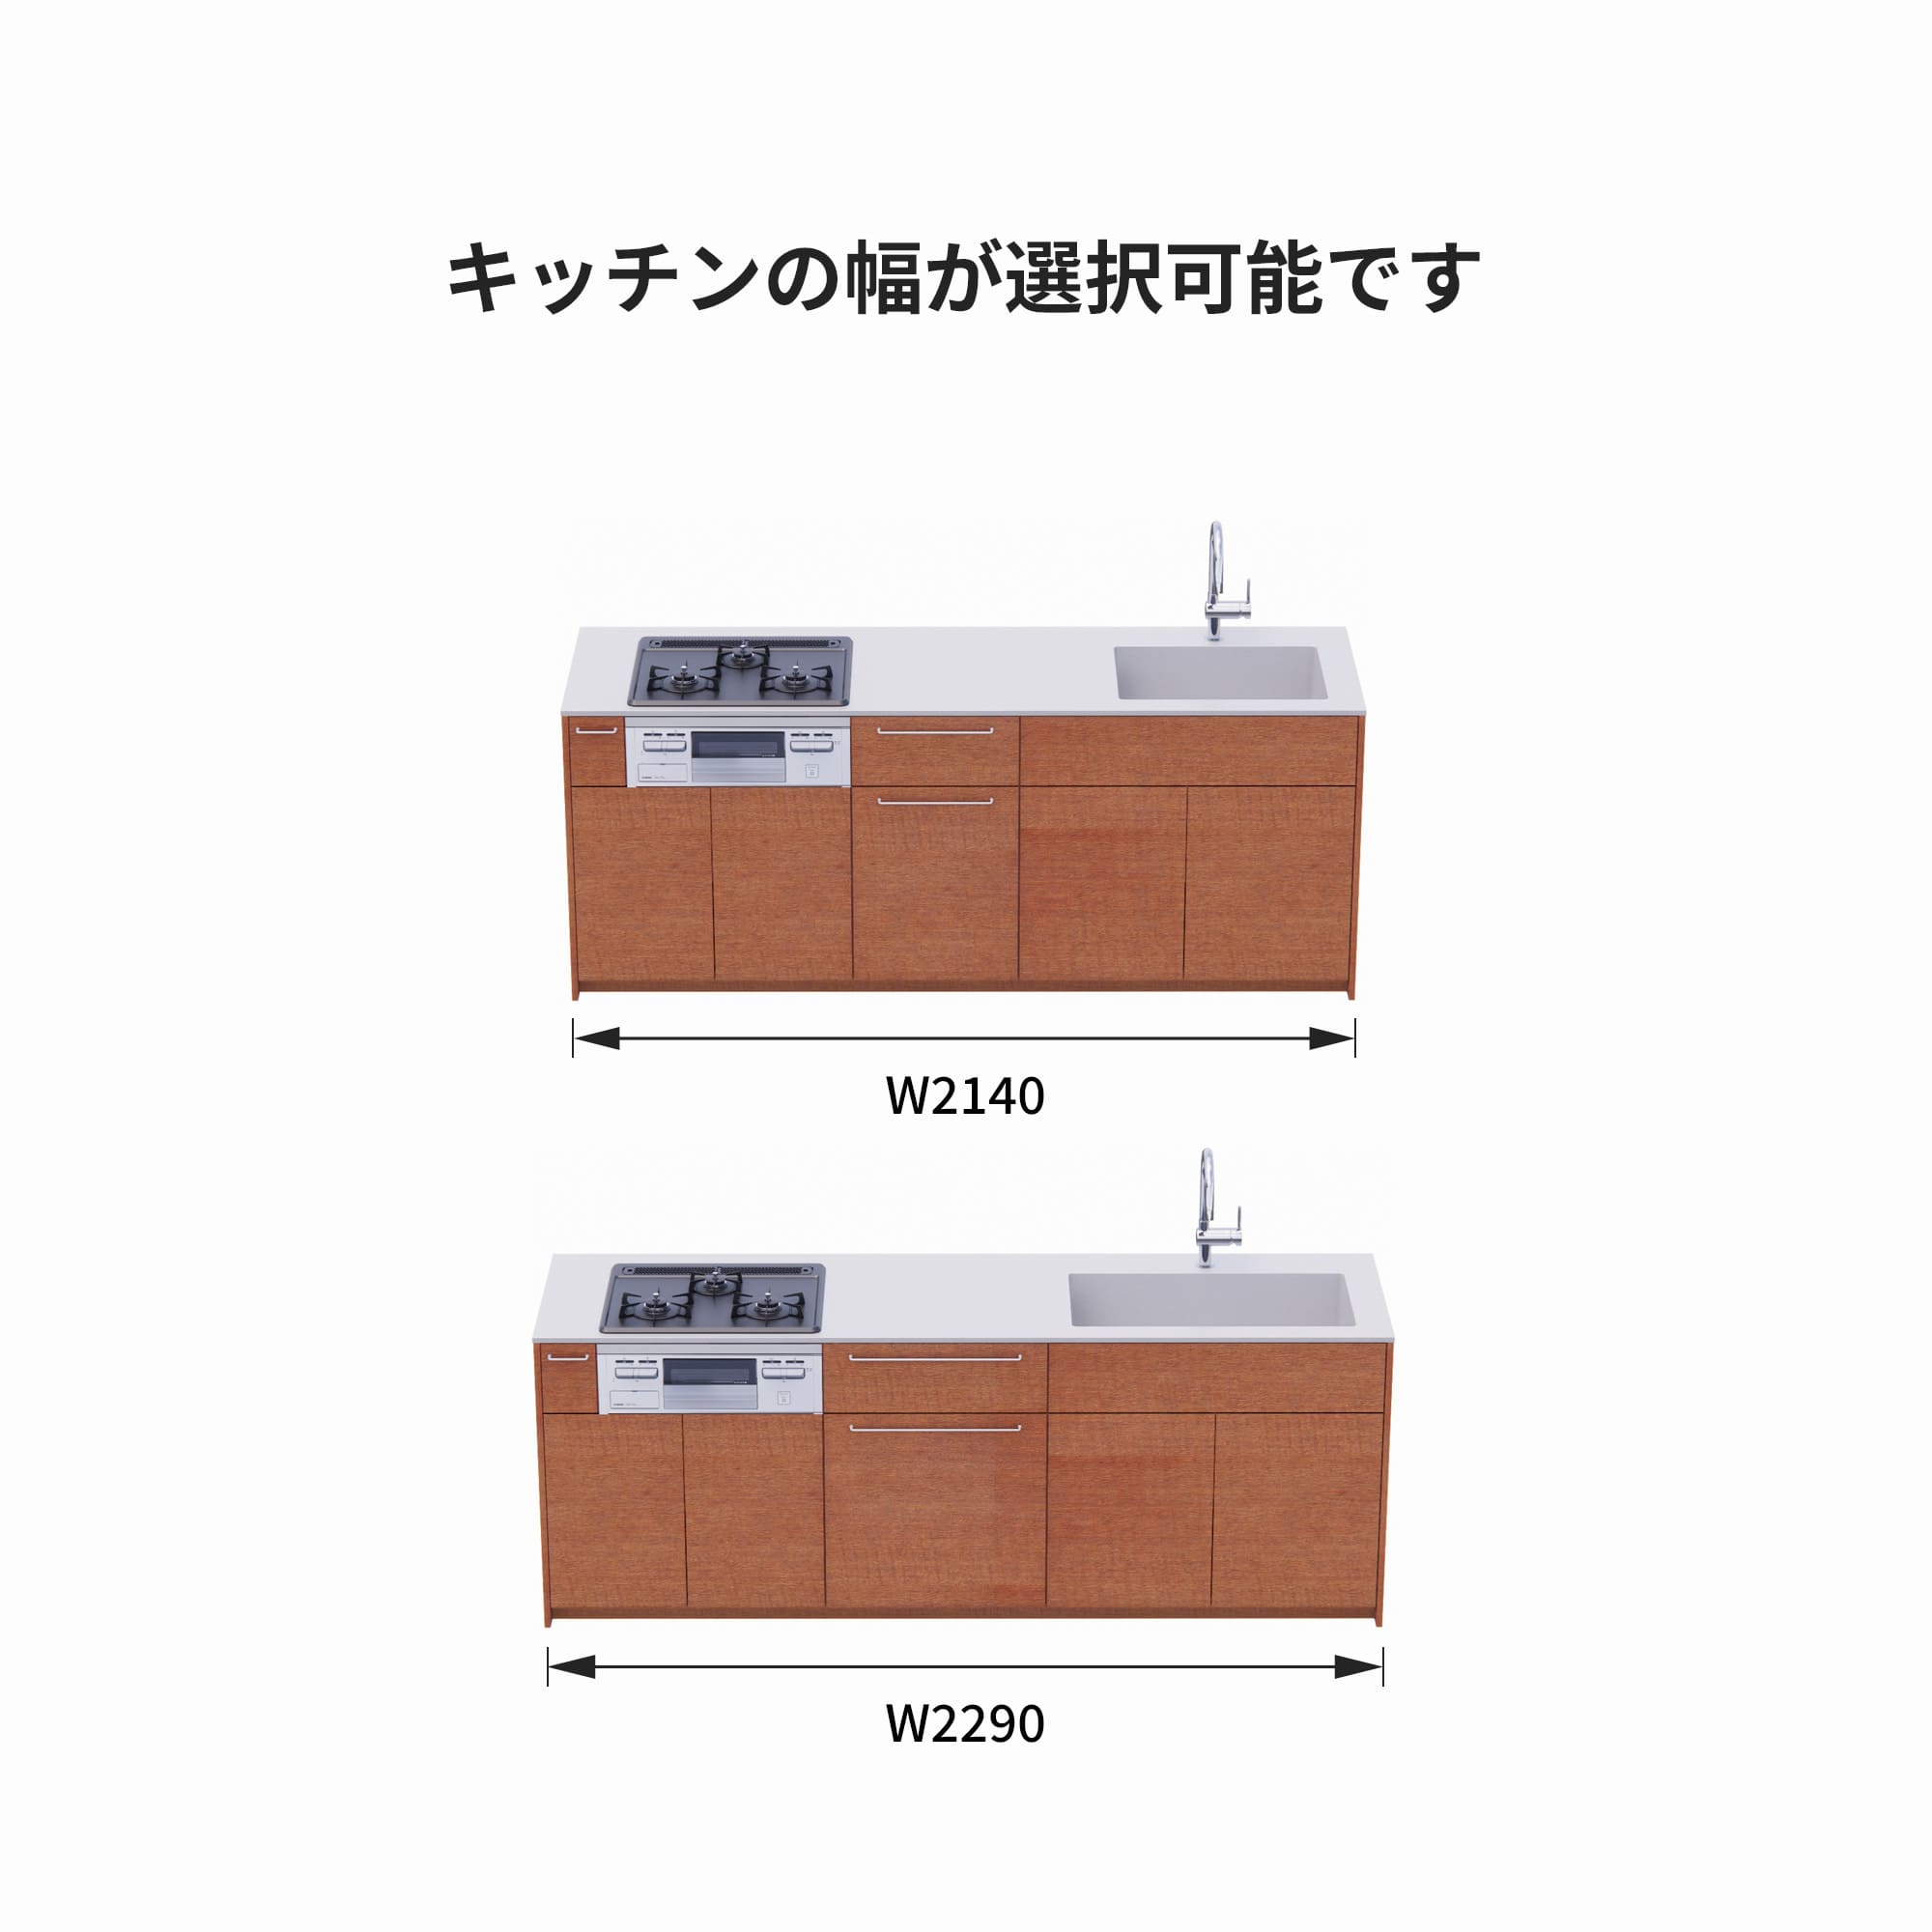 木製システムキッチン 対面型 W2140～2290・コンロあり / オーブンなし / 食洗機なし KB-KC022-35-G183 サイズはW2140と2290から選択可能です